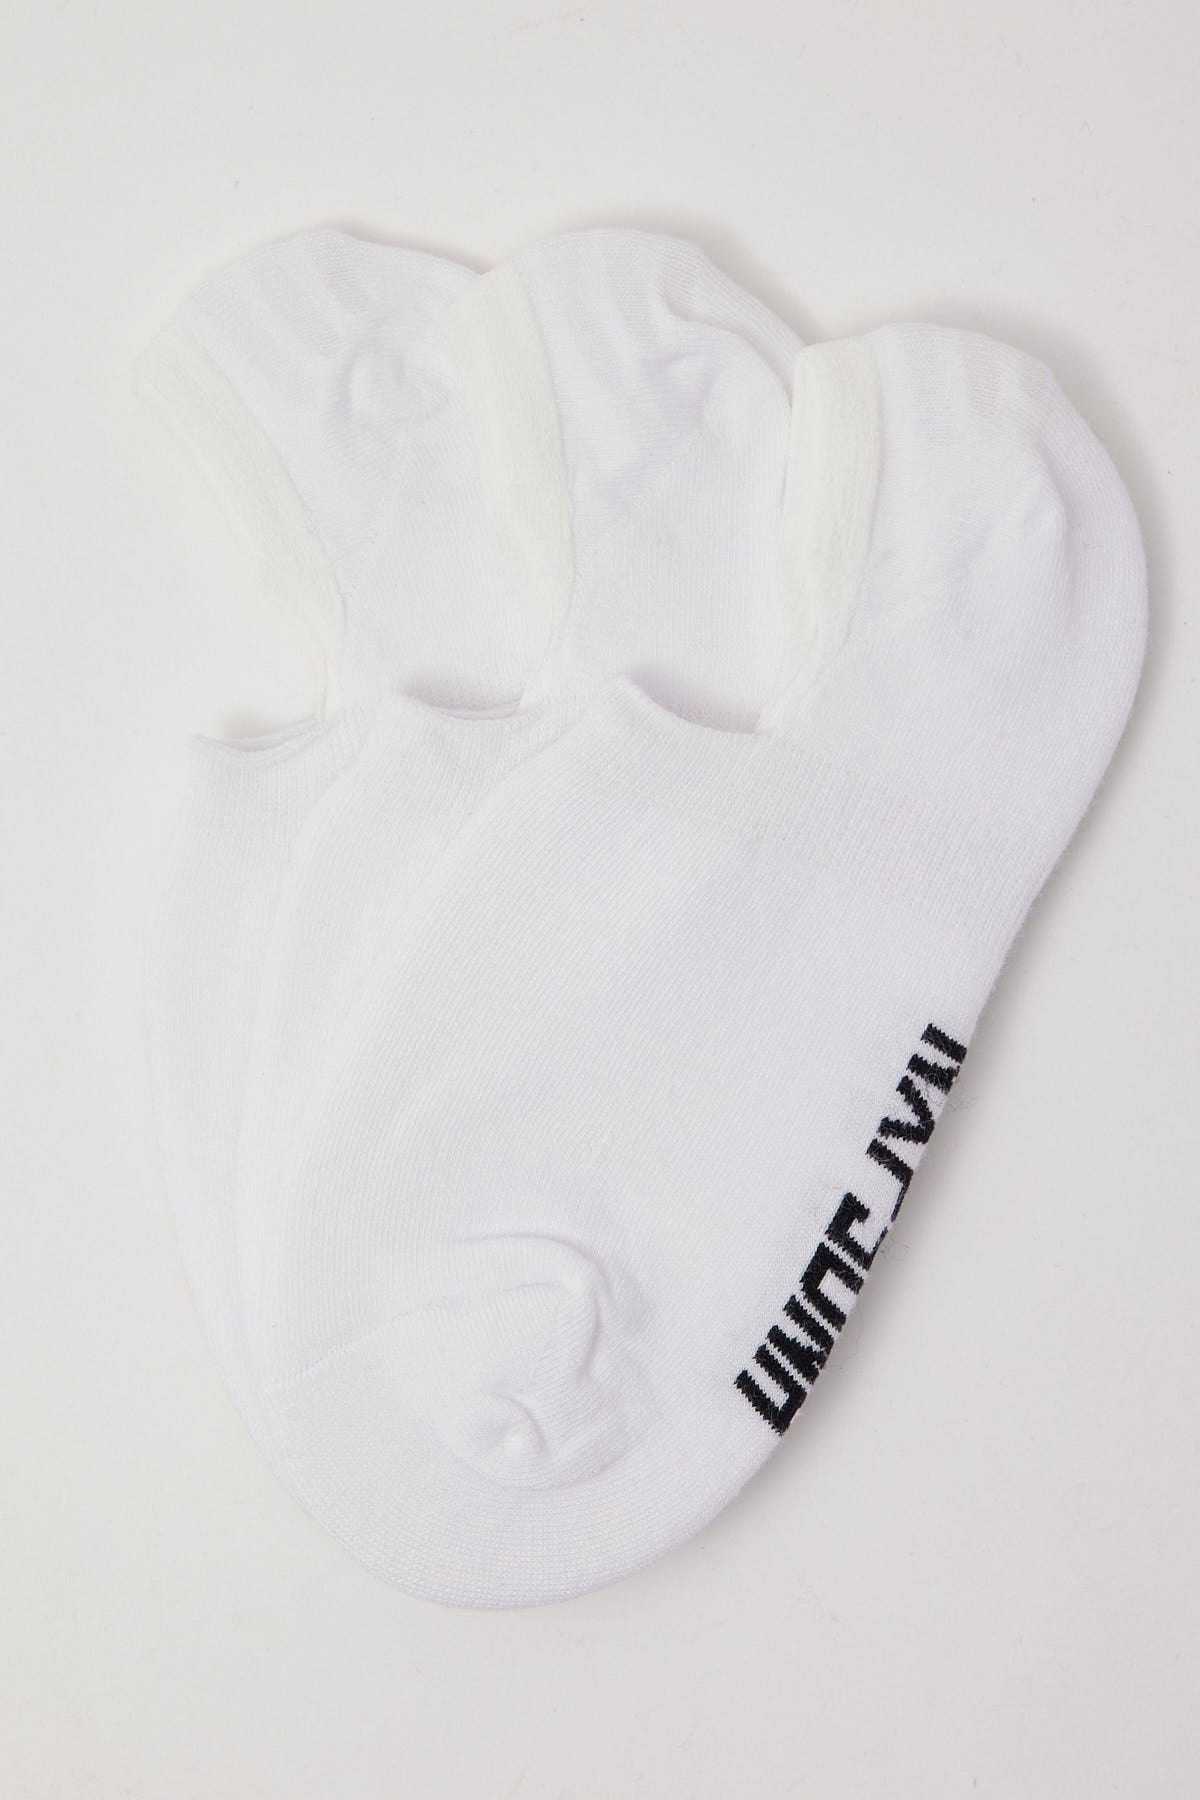 Nena & Pasadena NXP Invisible Sock 3 Pack White